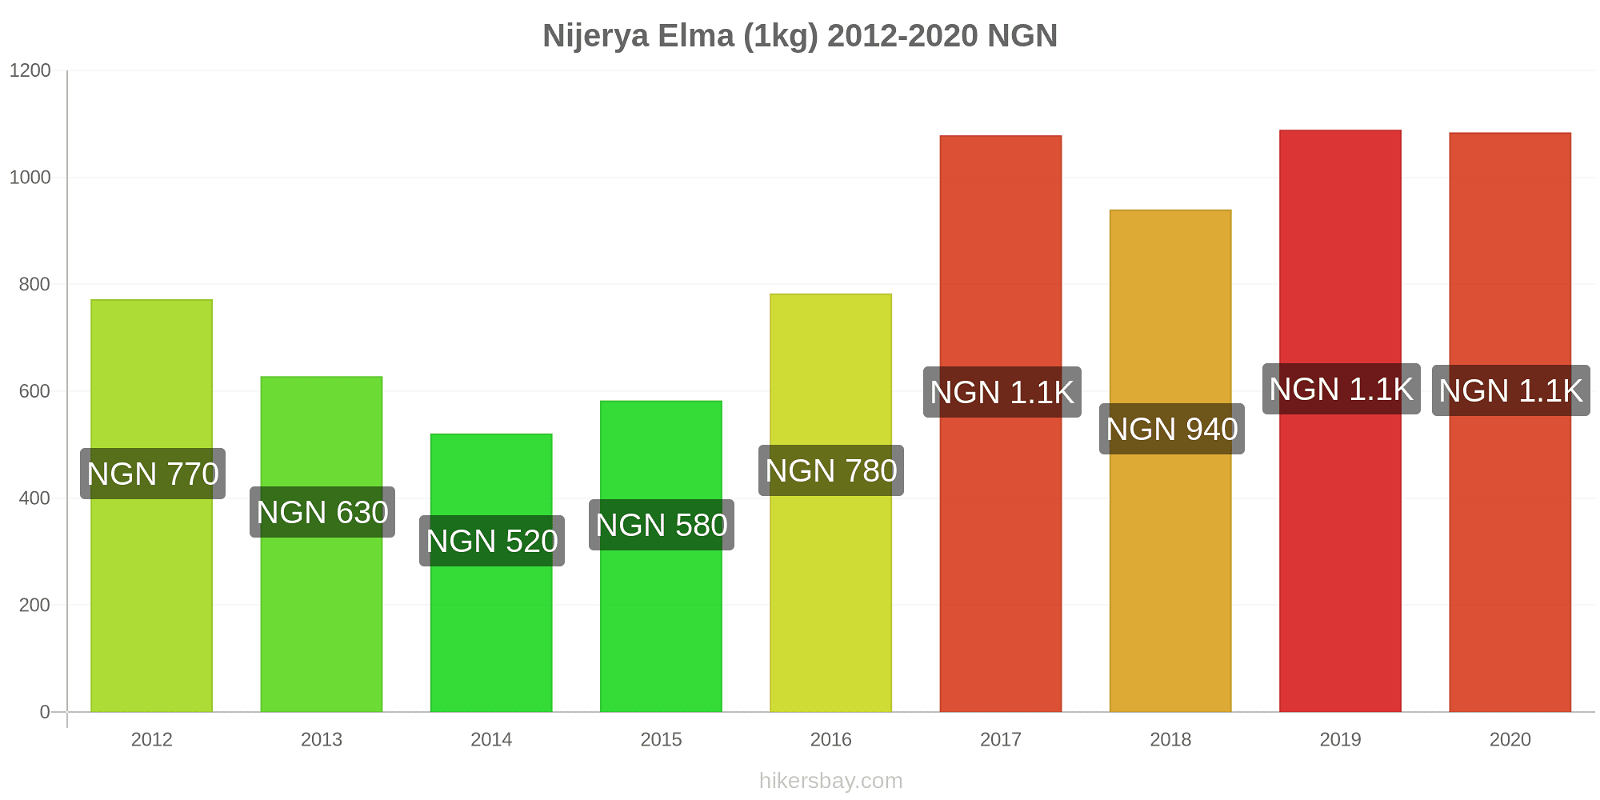 Nijerya fiyat değişiklikleri Elma (1kg) hikersbay.com